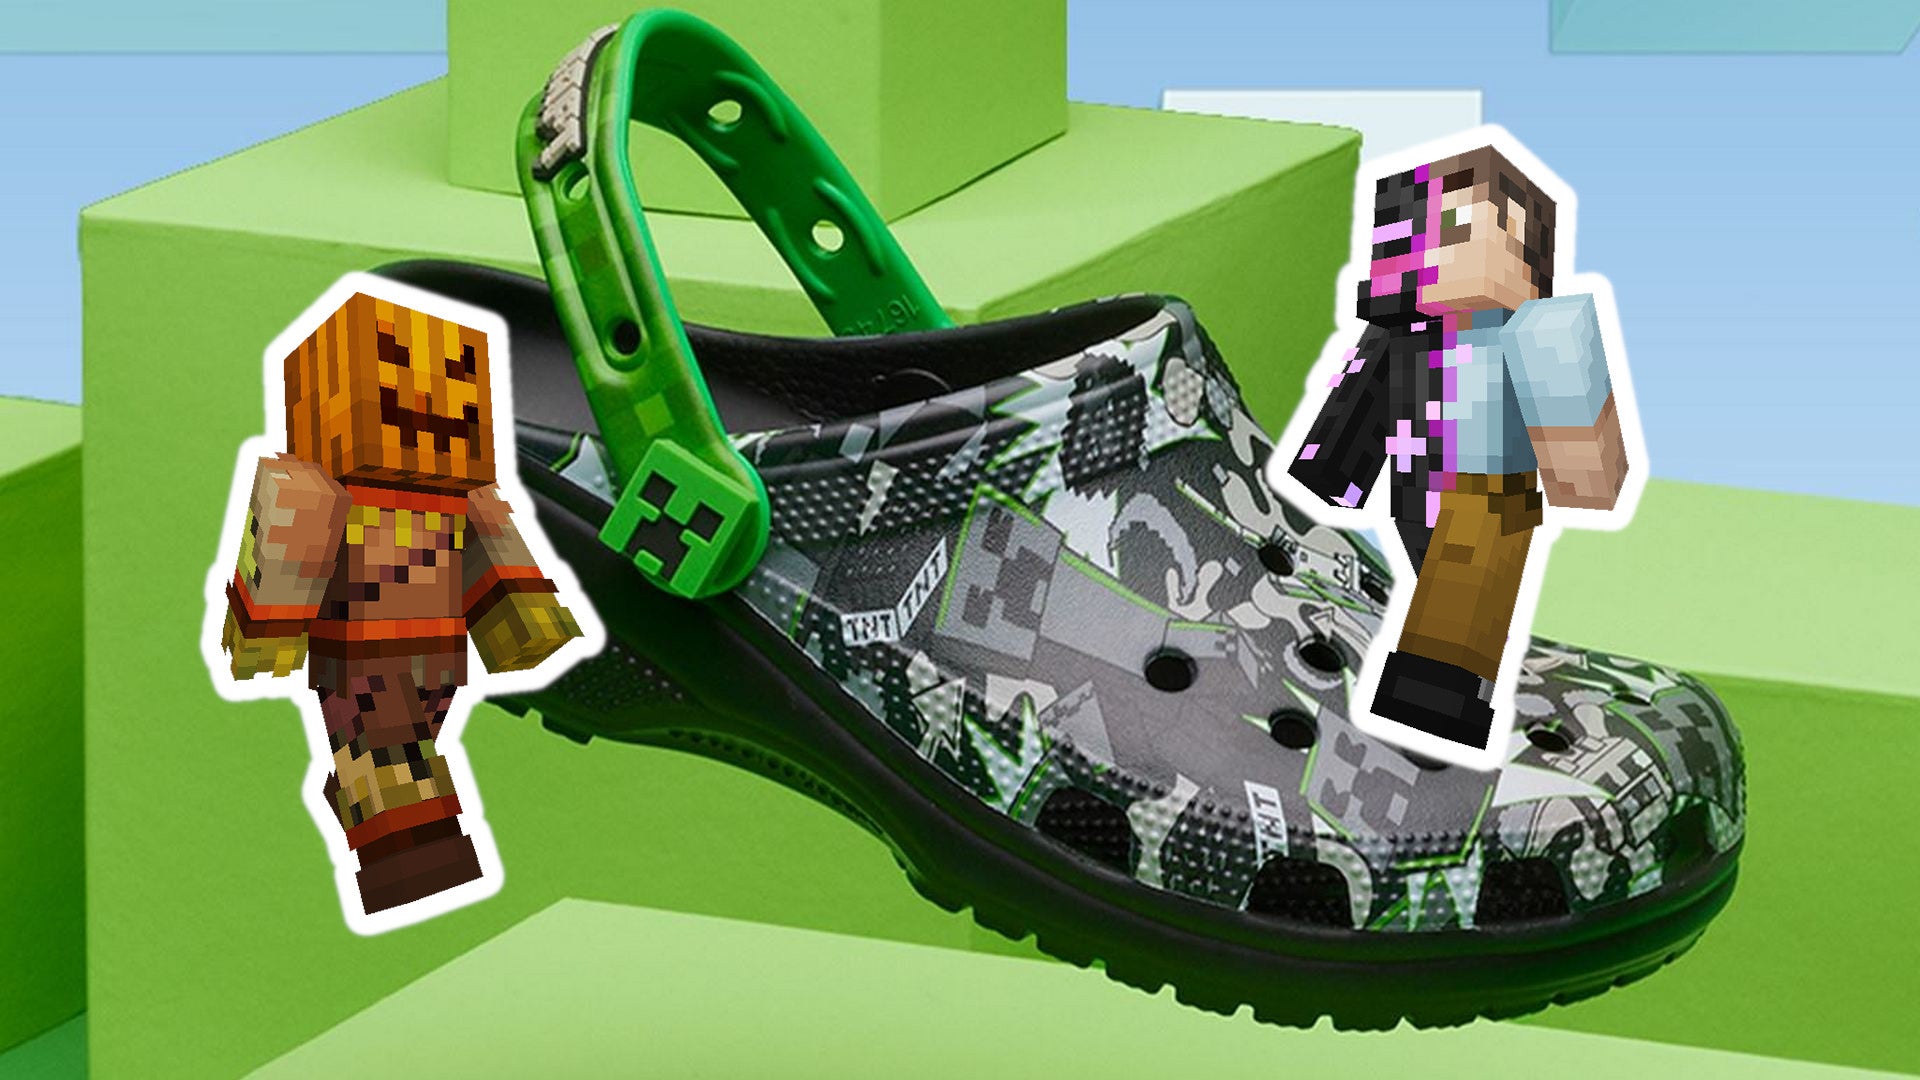 #Minecraft kooperiert mit Crocs: Endlich Minecraft an den Füßen tragen